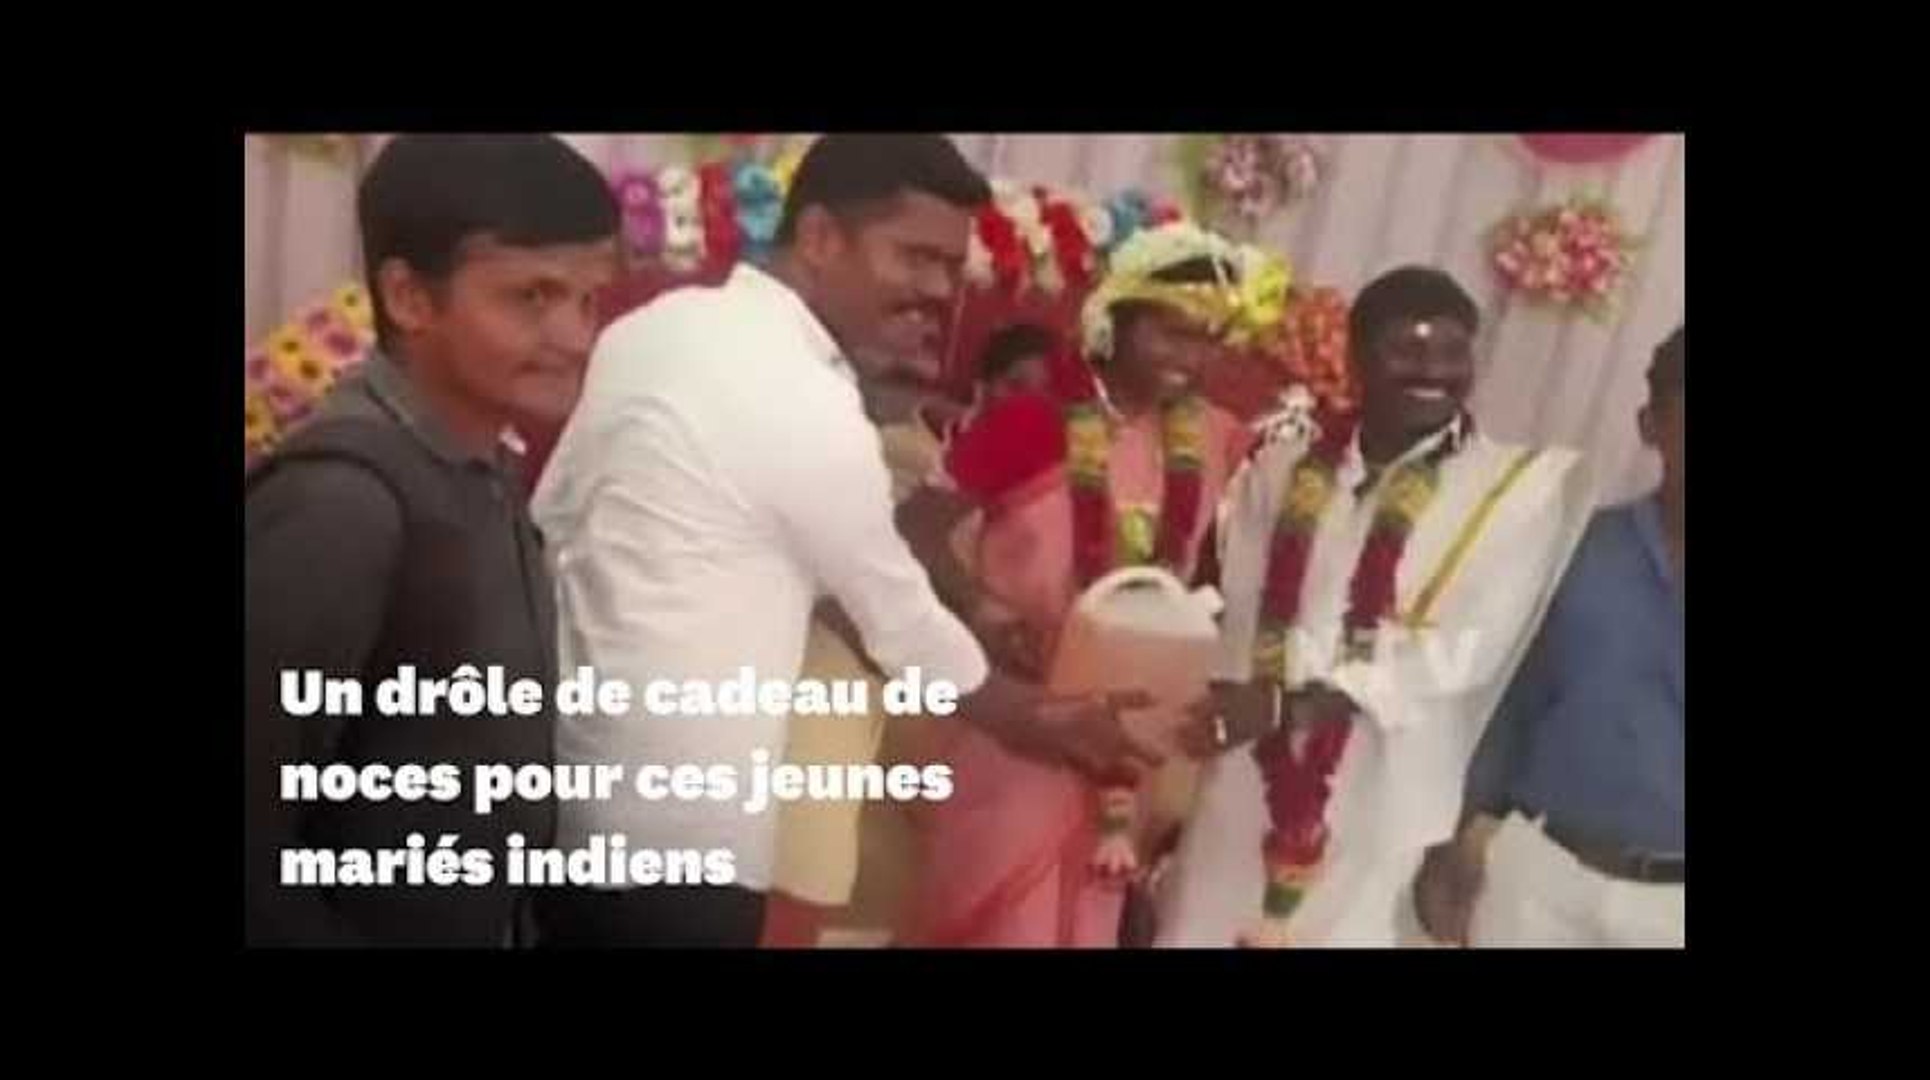 Ces jeunes mariés indiens ont reçu un drôle de cadeau de mariage - Vidéo  Dailymotion